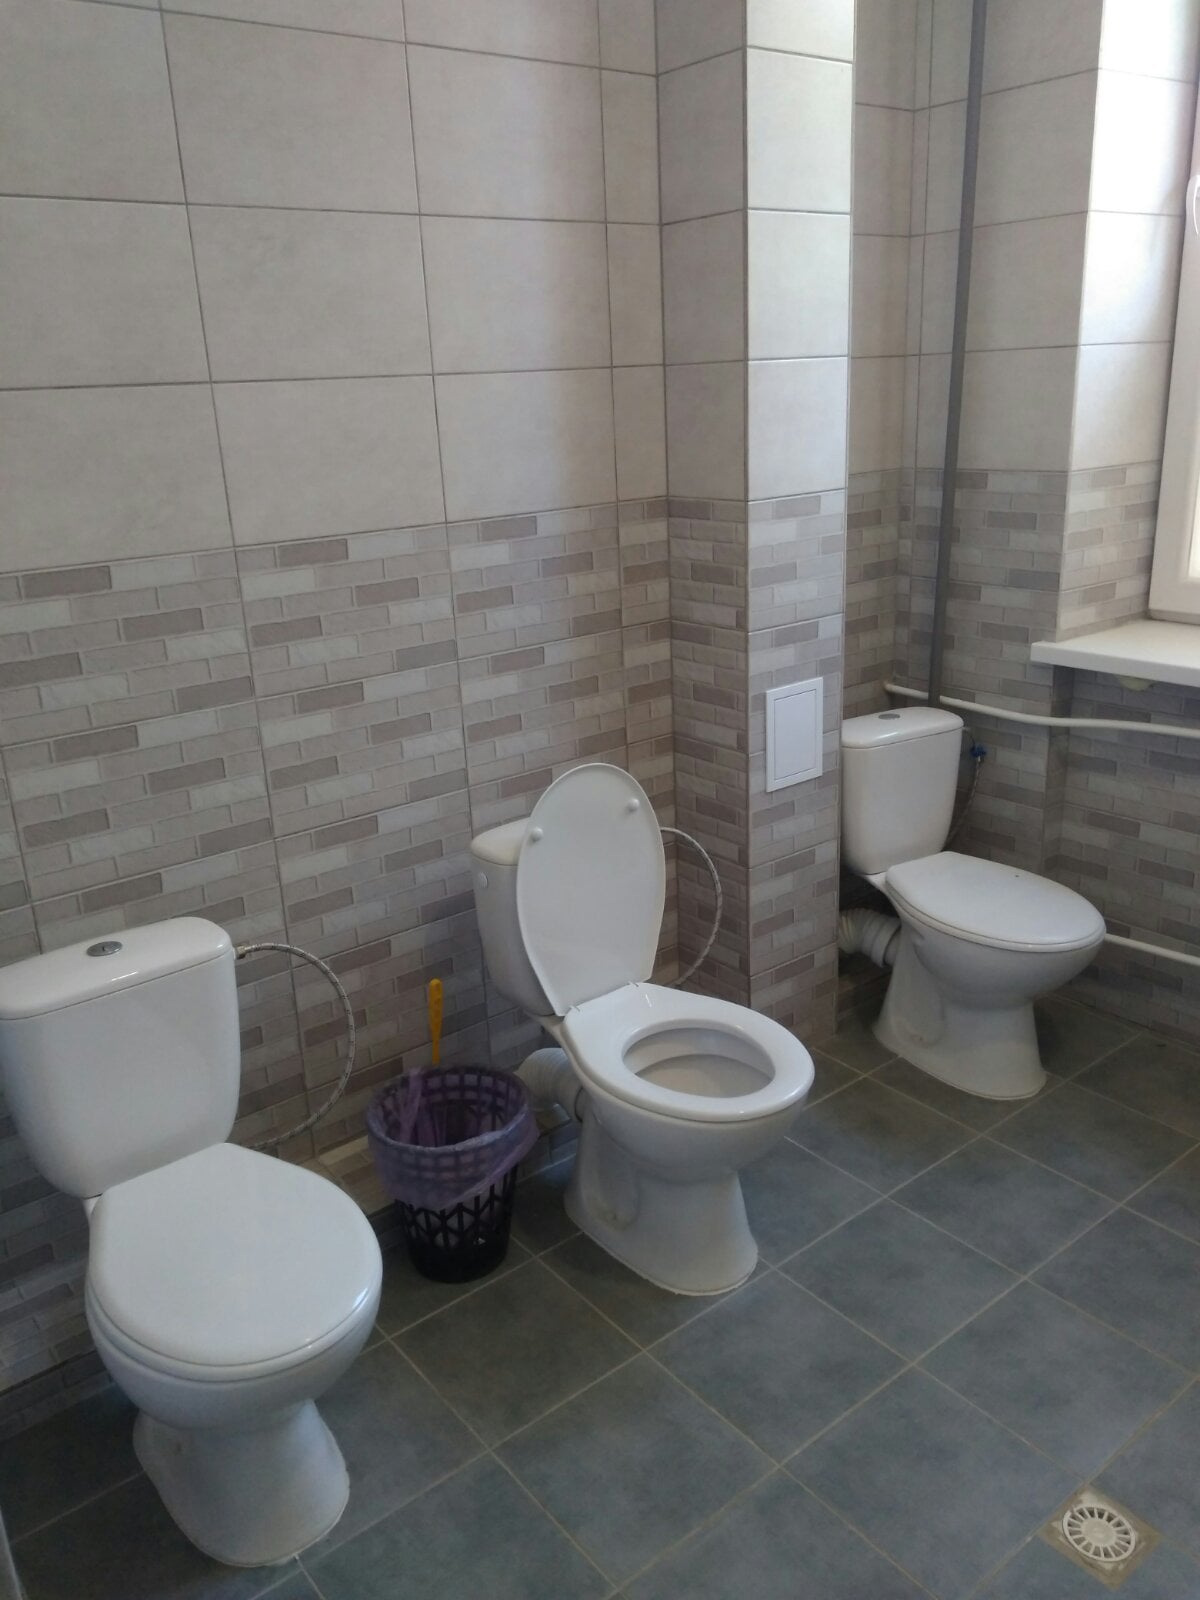 В ровенской школе в туалете нет перегородок: сеть взорвалась гневом